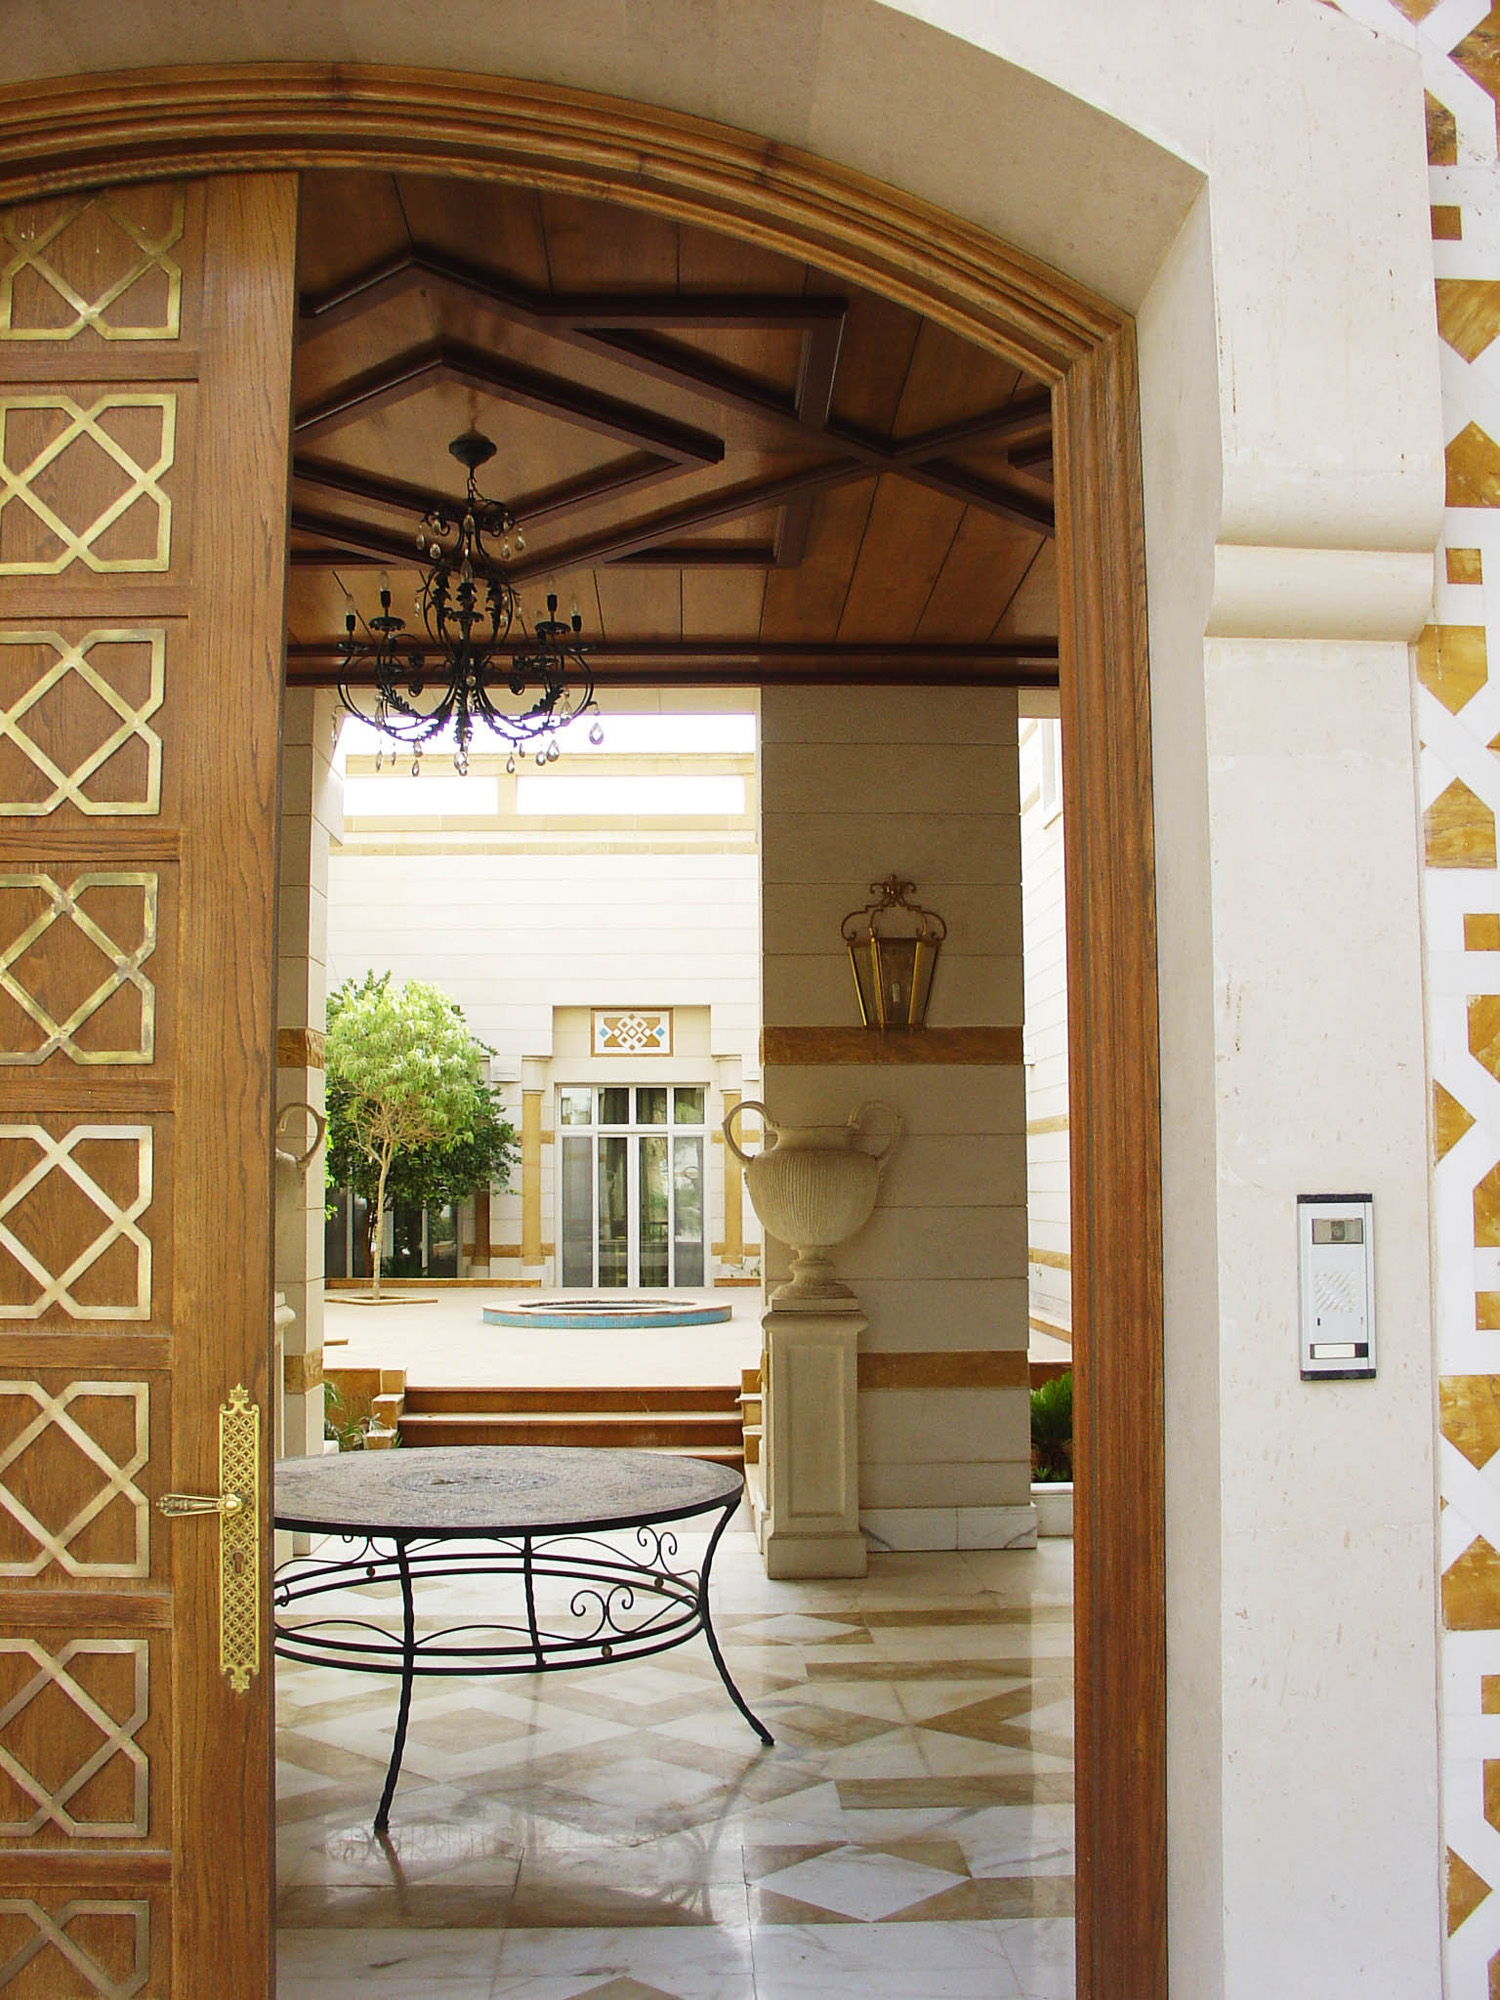 View through the entrance door

